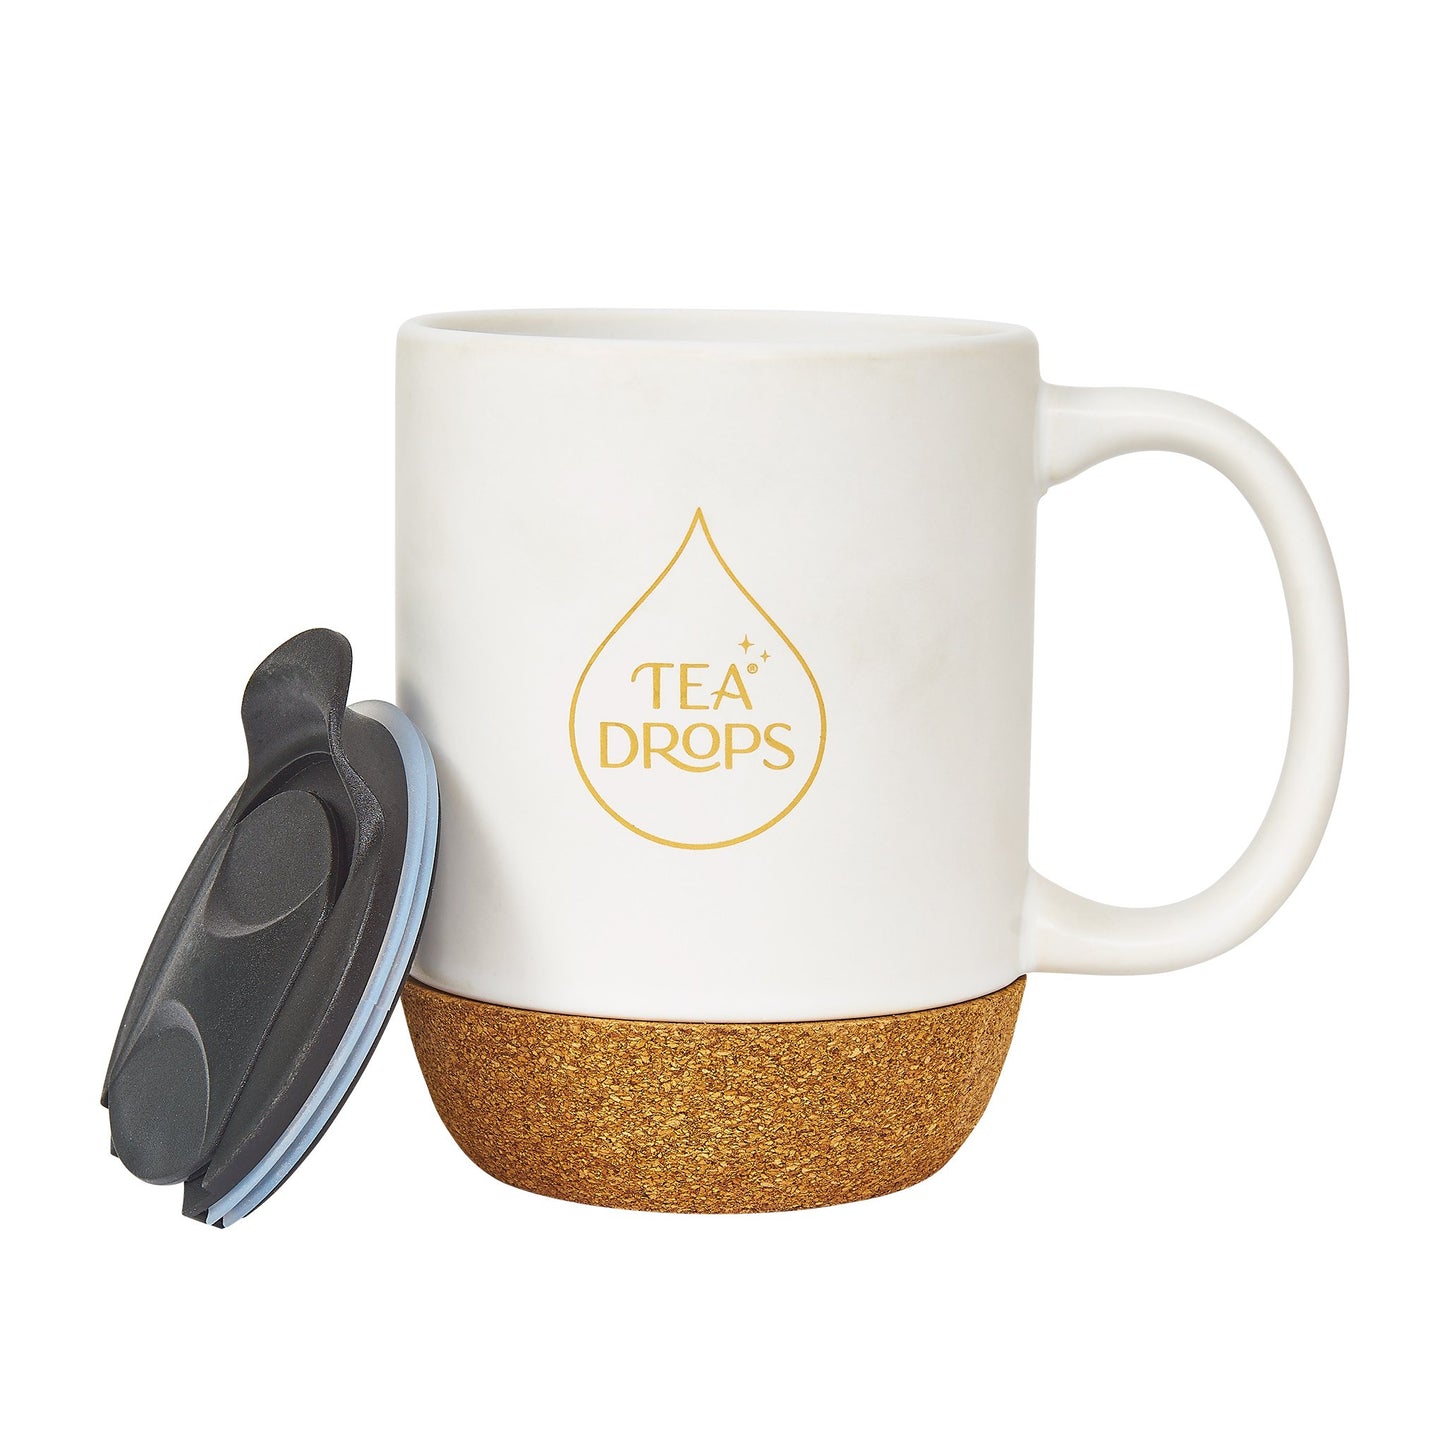 https://www.myteadrop.com/cdn/shop/products/tea-drops-new-tea-drops-ceramic-mug-with-lid-tea-drops-ceramic-tea-mug-with-lid-12oz-29921982775343.jpg?v=1627989719&width=1445